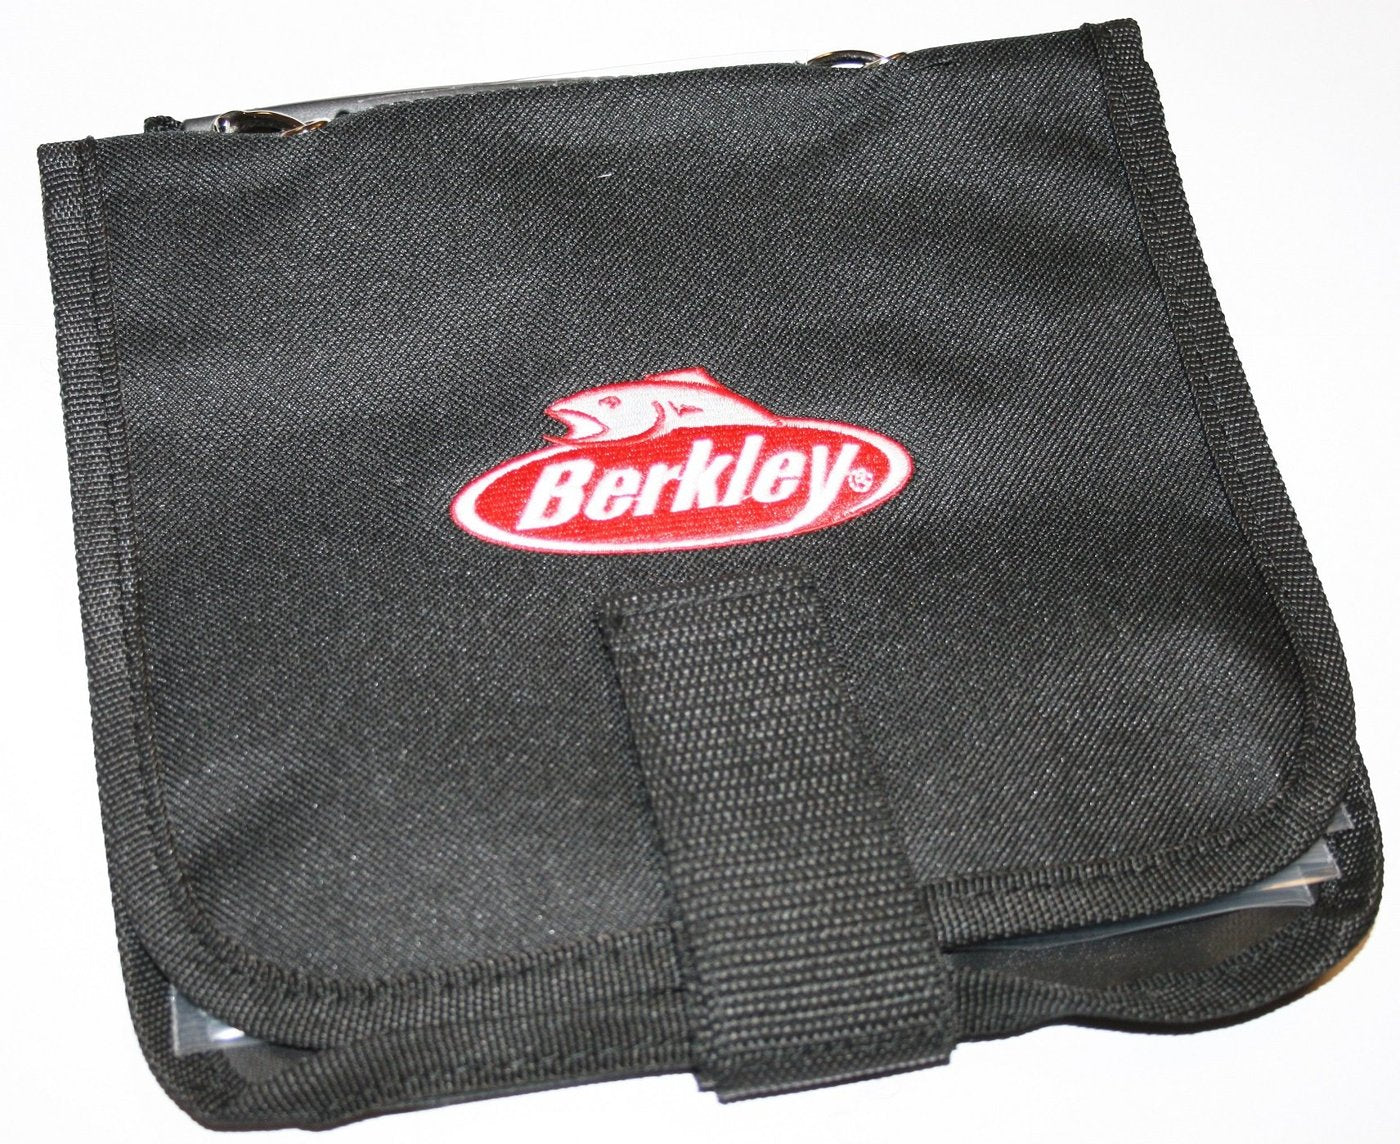 Berkley Bait Notebook Soft Plastic Storage Wallet